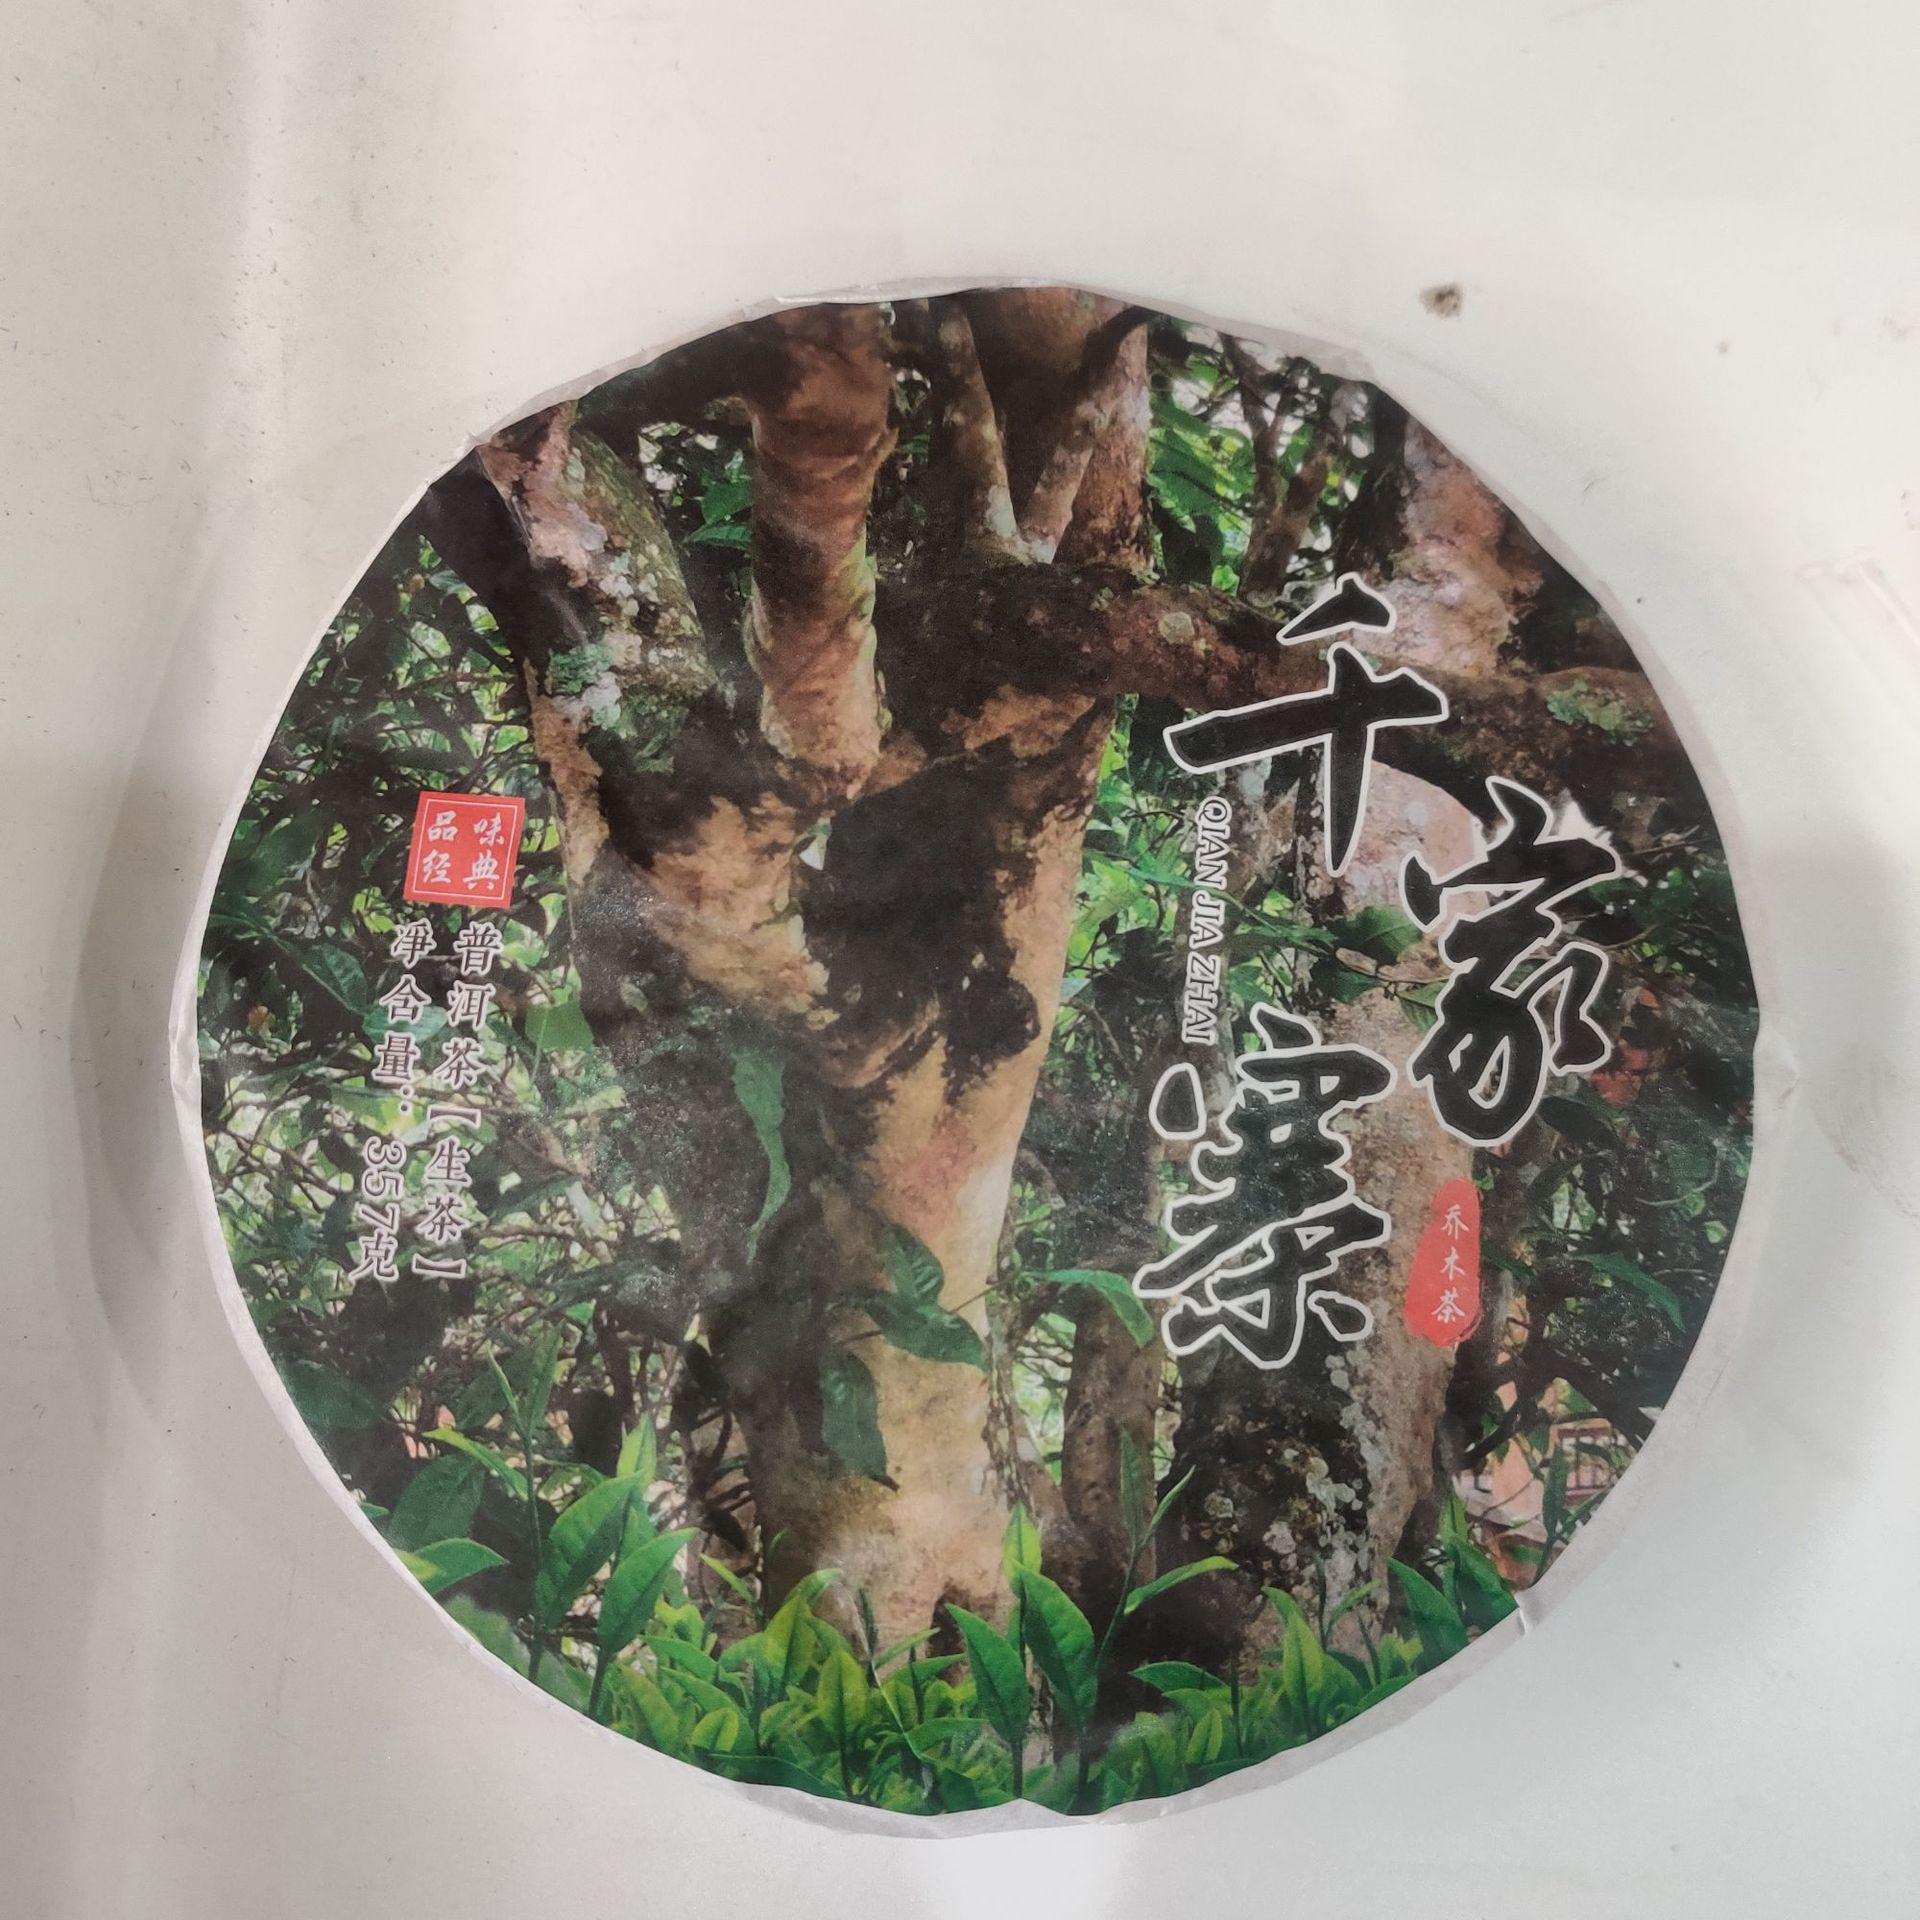 2021年乔木茶厂千家寨云南七子饼茶高级网红普洱茶生普古树茶新茶